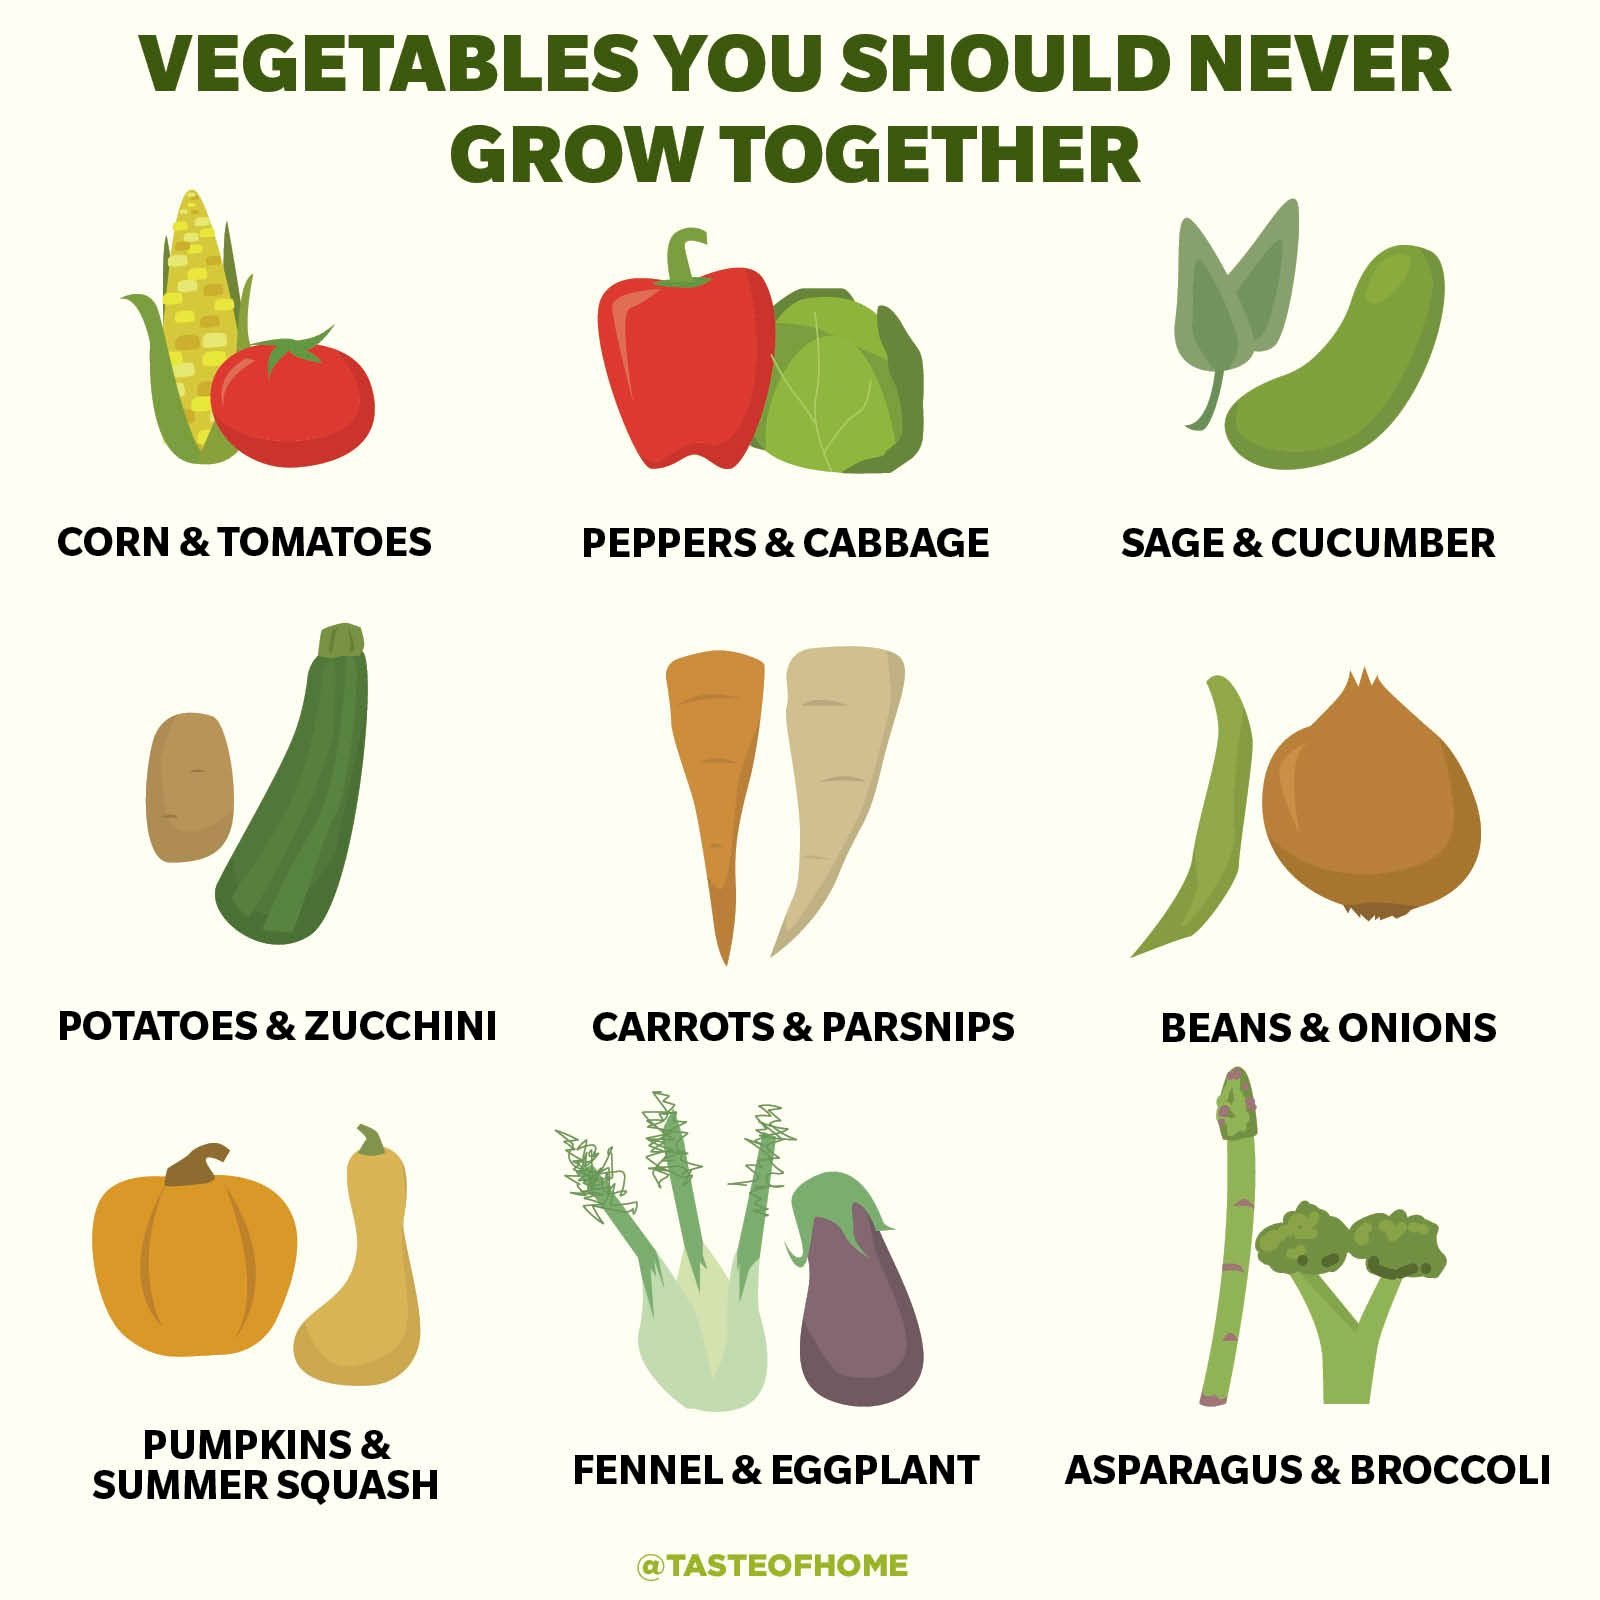 https://www.tasteofhome.com/wp-content/uploads/2021/03/Vegetables-You-Should-Never-Grow-Together-2.jpg